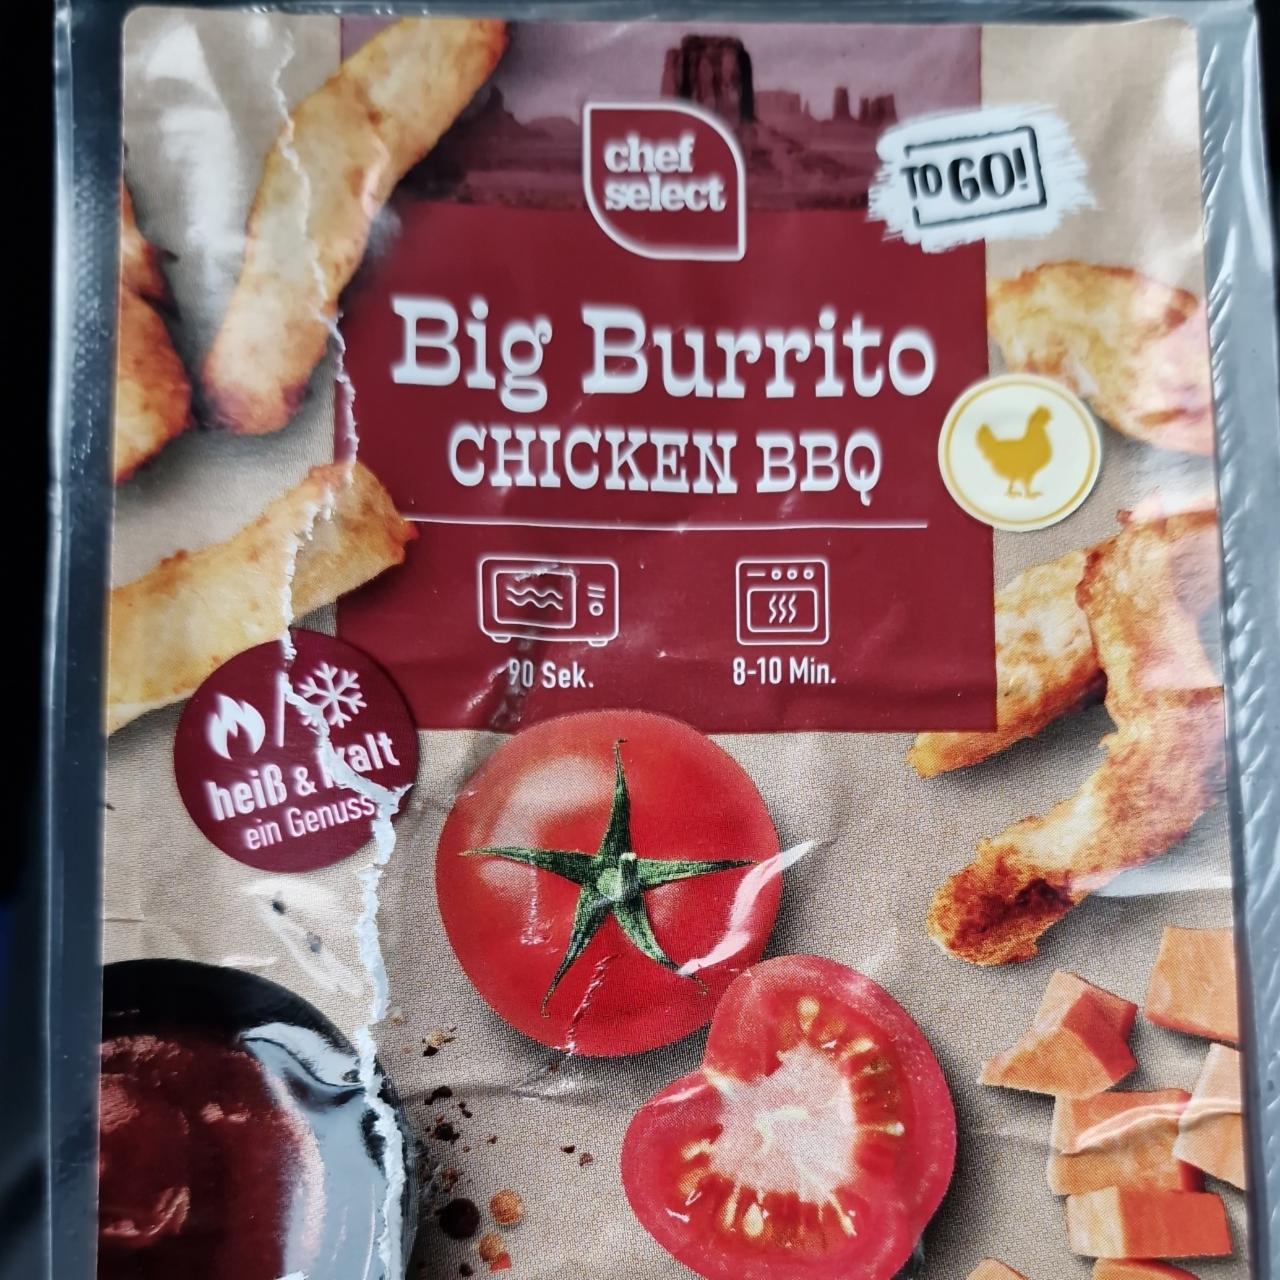 Big Burrito Chicken BBQ Chef hodnoty a Select nutriční kJ kalorie, 